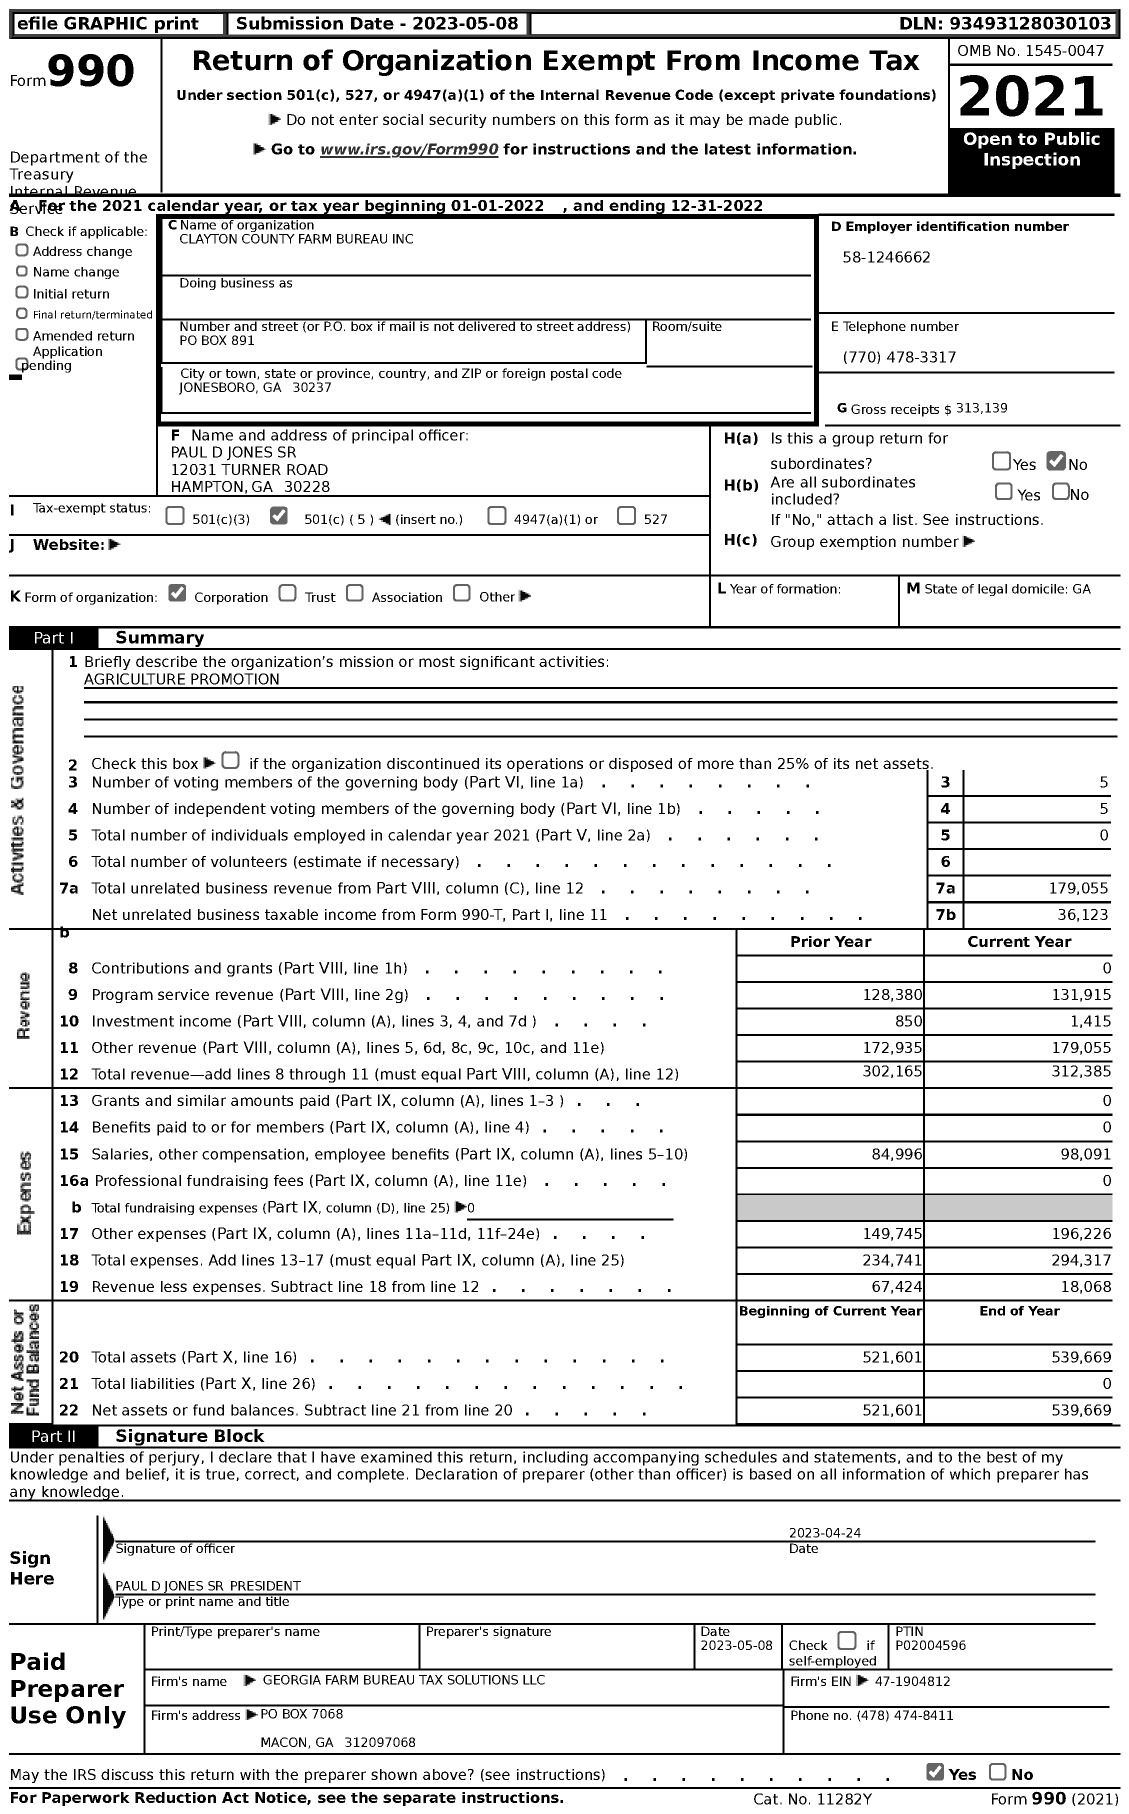 Image of first page of 2022 Form 990 for Georgia Farm Bureau Federation - Clayton County Farm Bureau